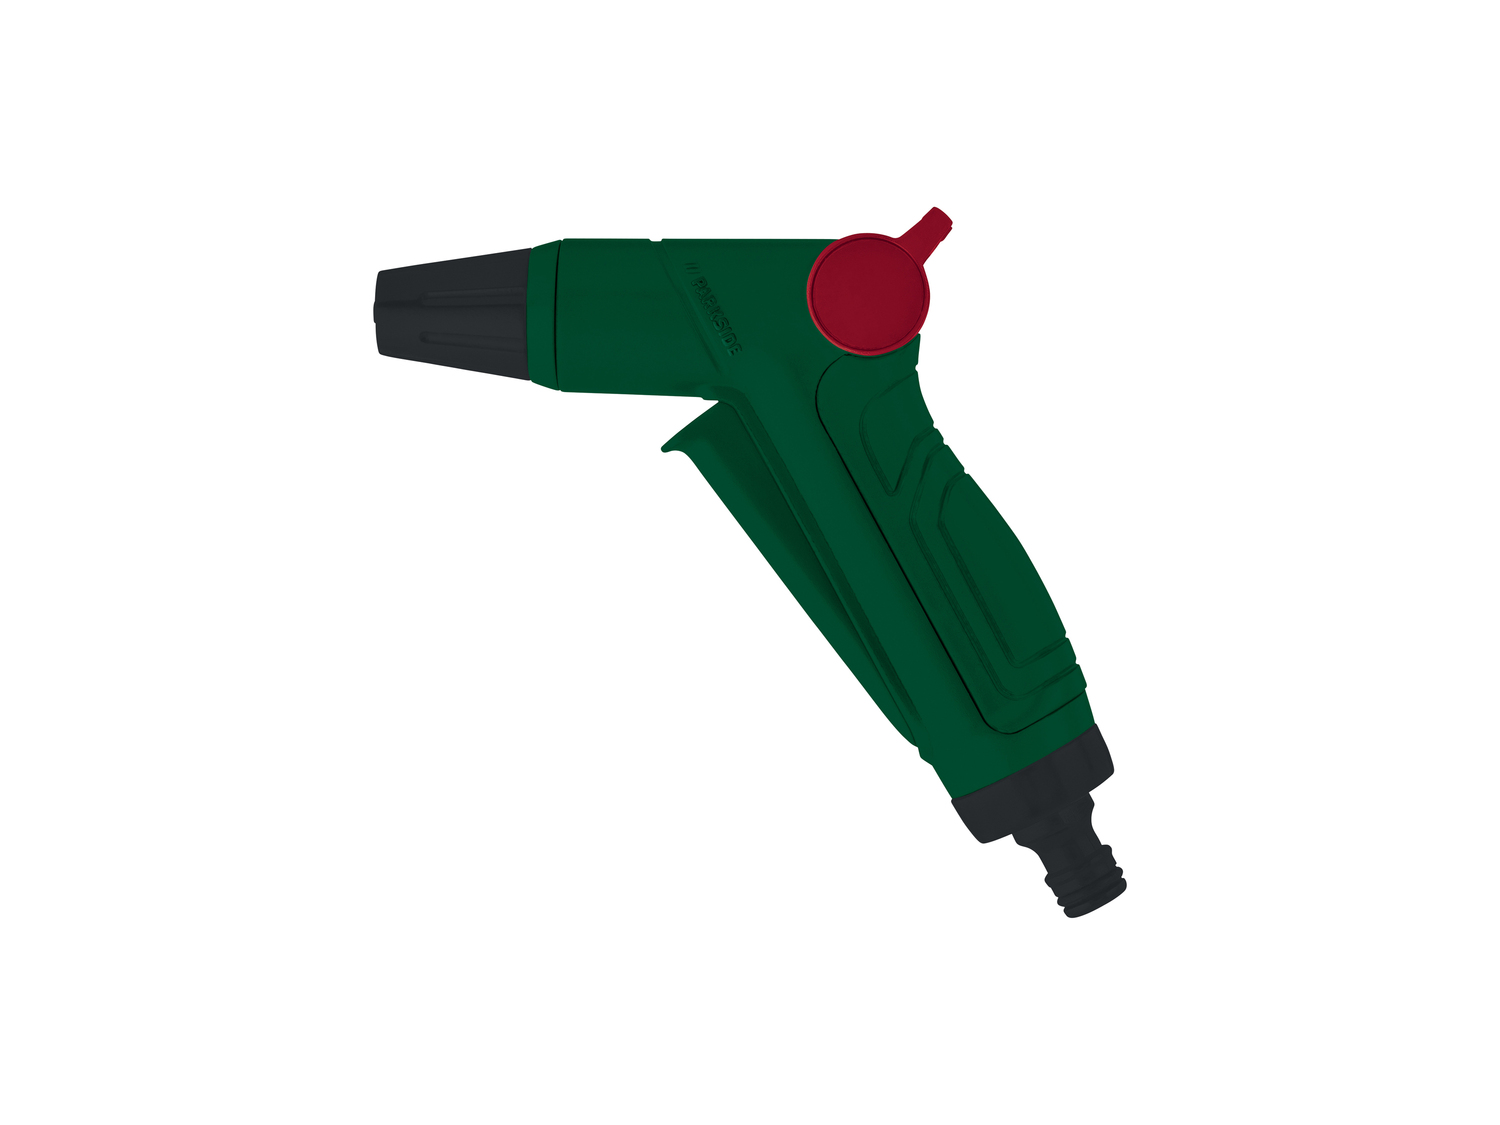 Doccetta o pistola per irrigazione Parkside, prezzo 4.99 &#8364; 
- Click System
- ...